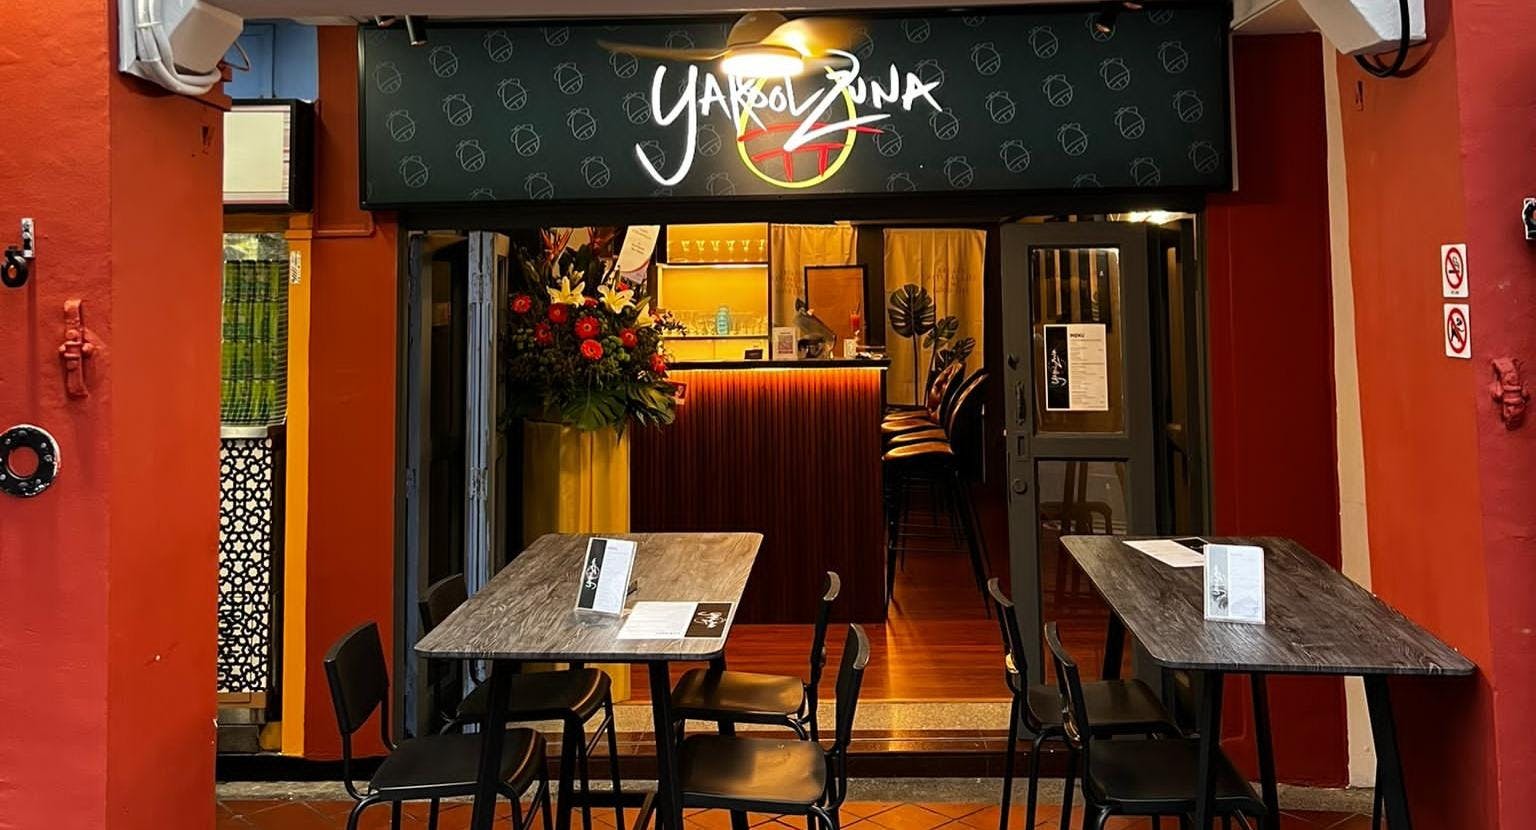 Photo of restaurant YakoolZuna in Bugis, Singapore